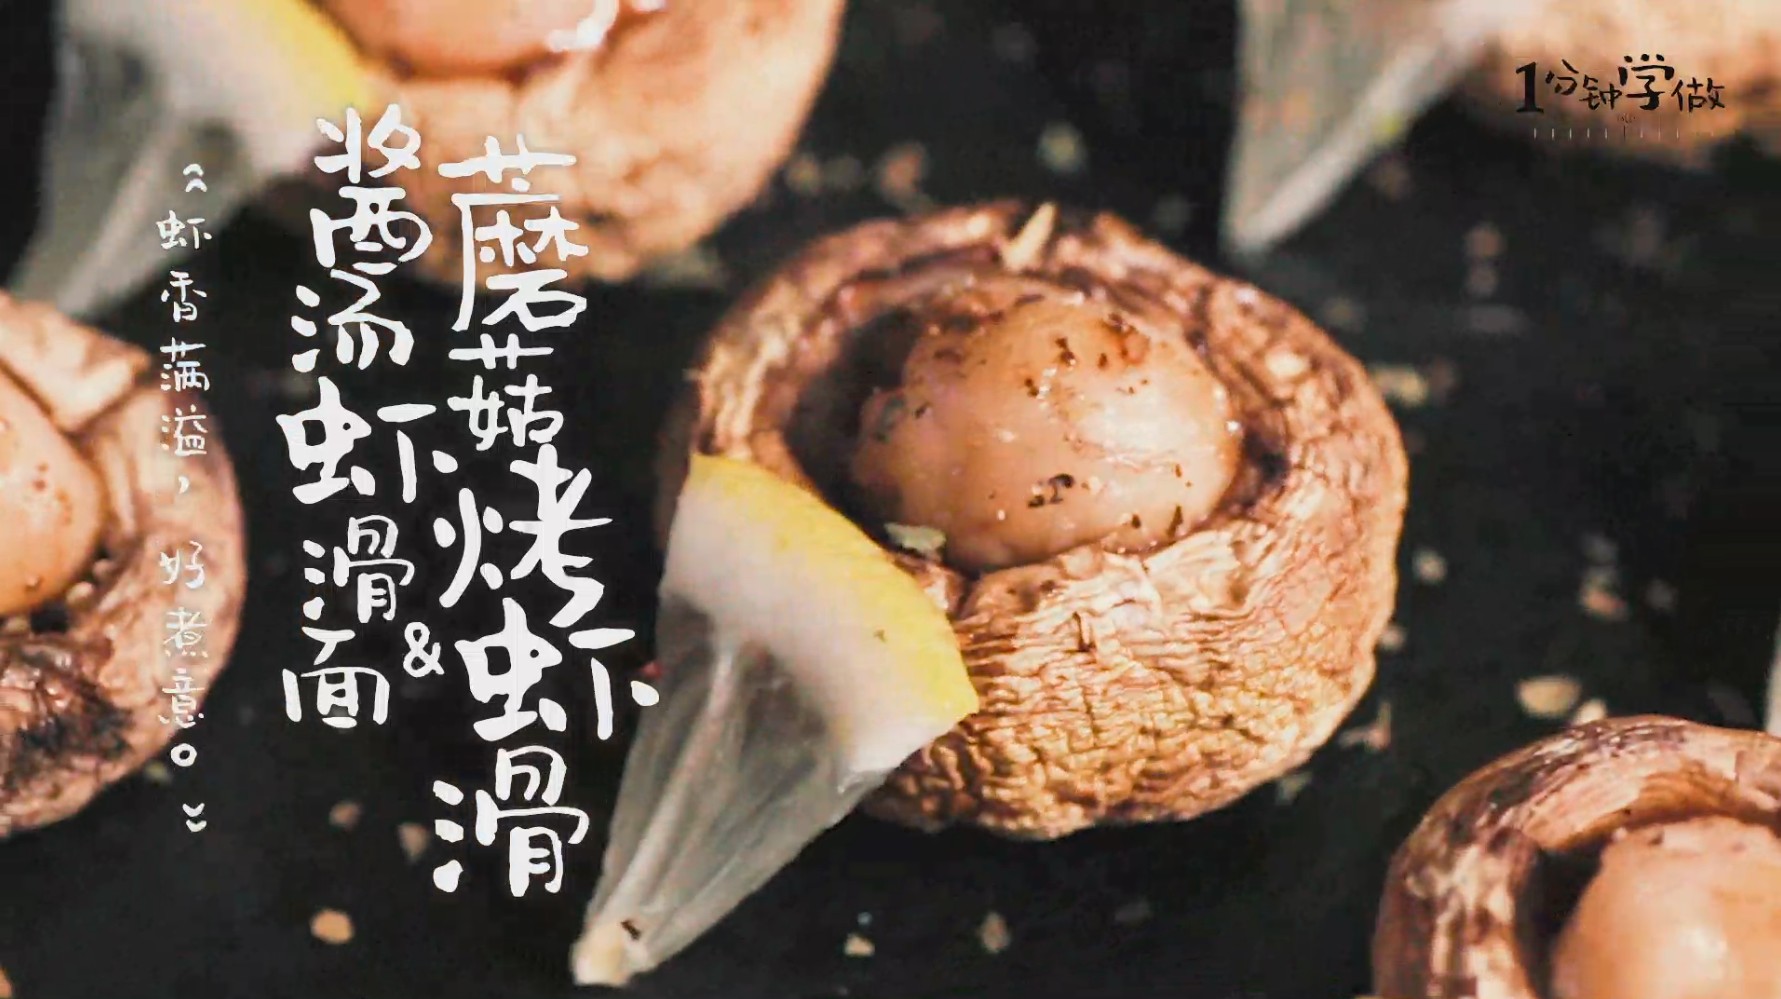 虾滑烤蘑菇酱汤虾滑面成品图